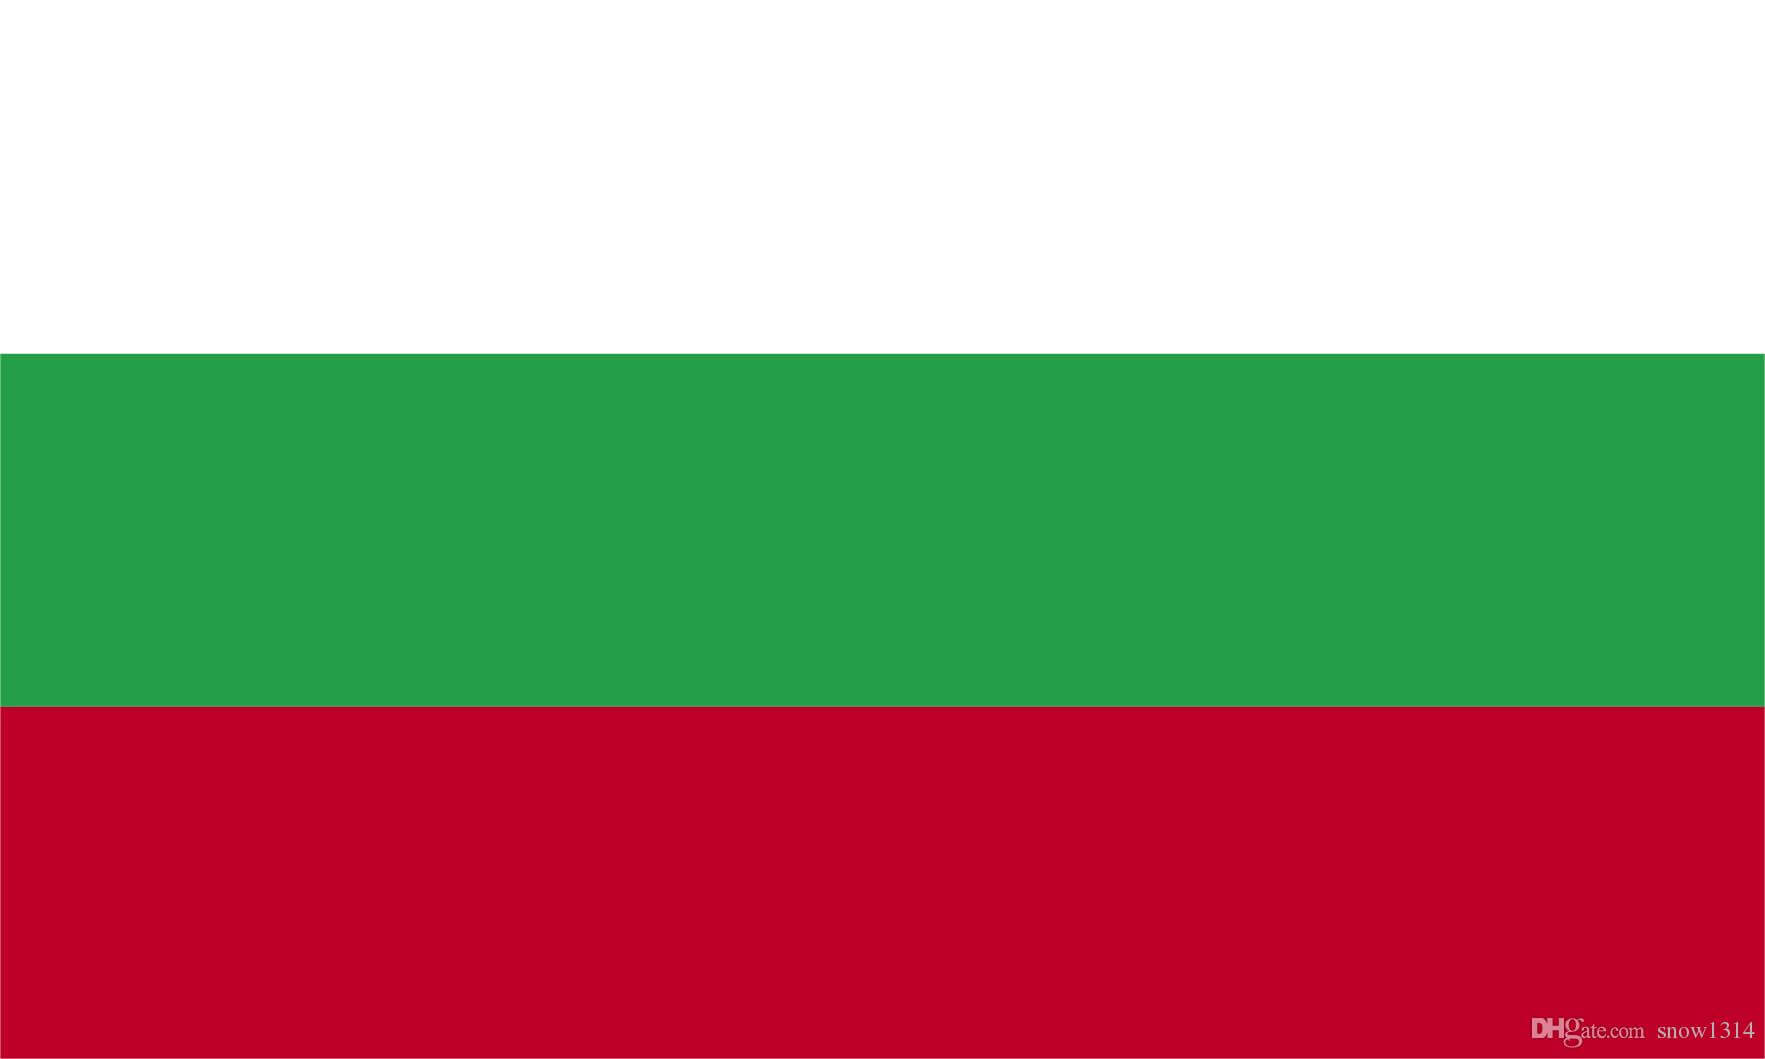 República da Bulgária